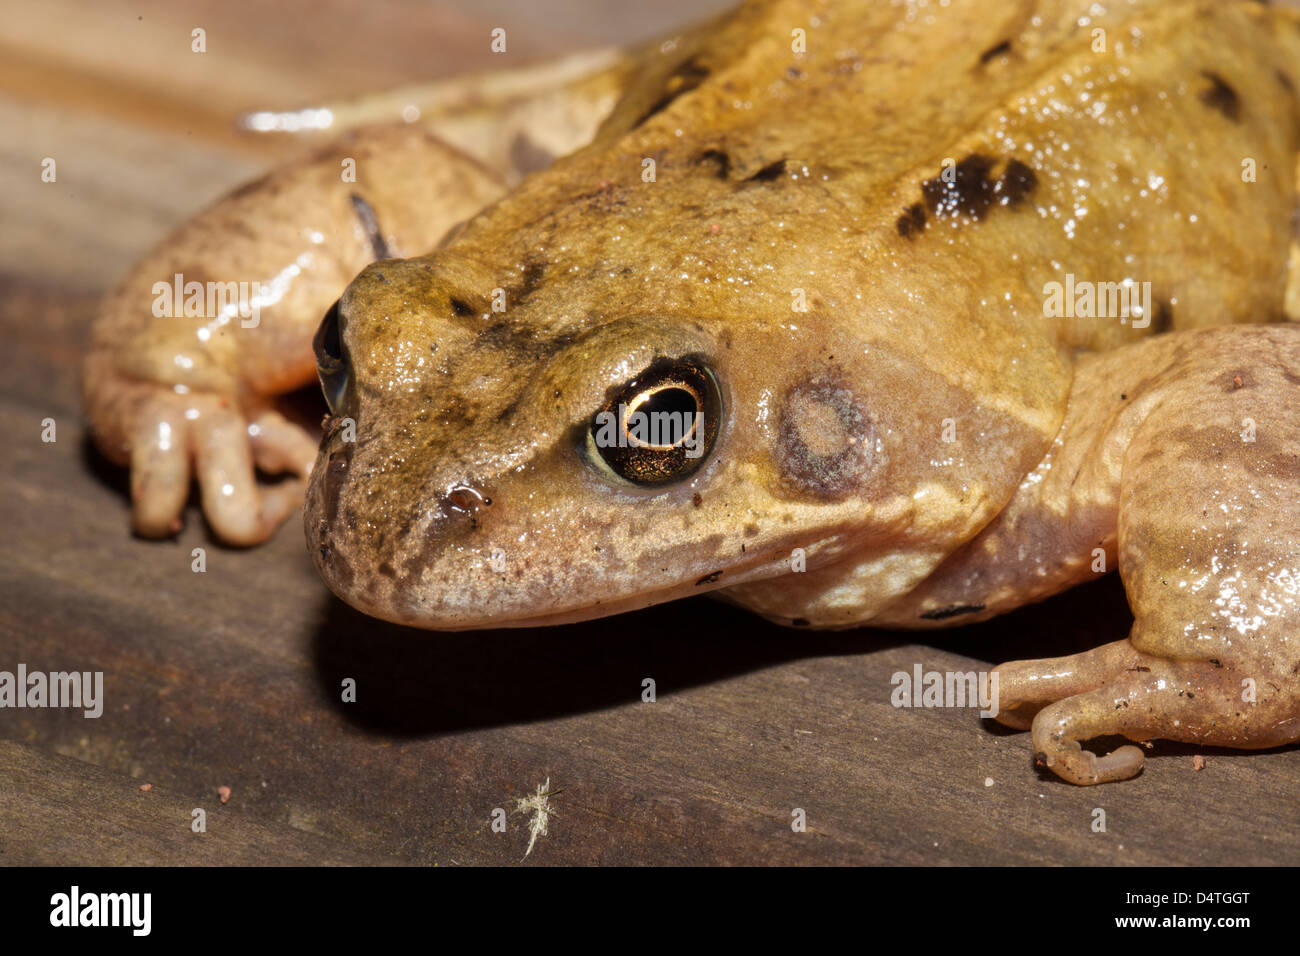 Ravvicinata di una rana comune Foto Stock